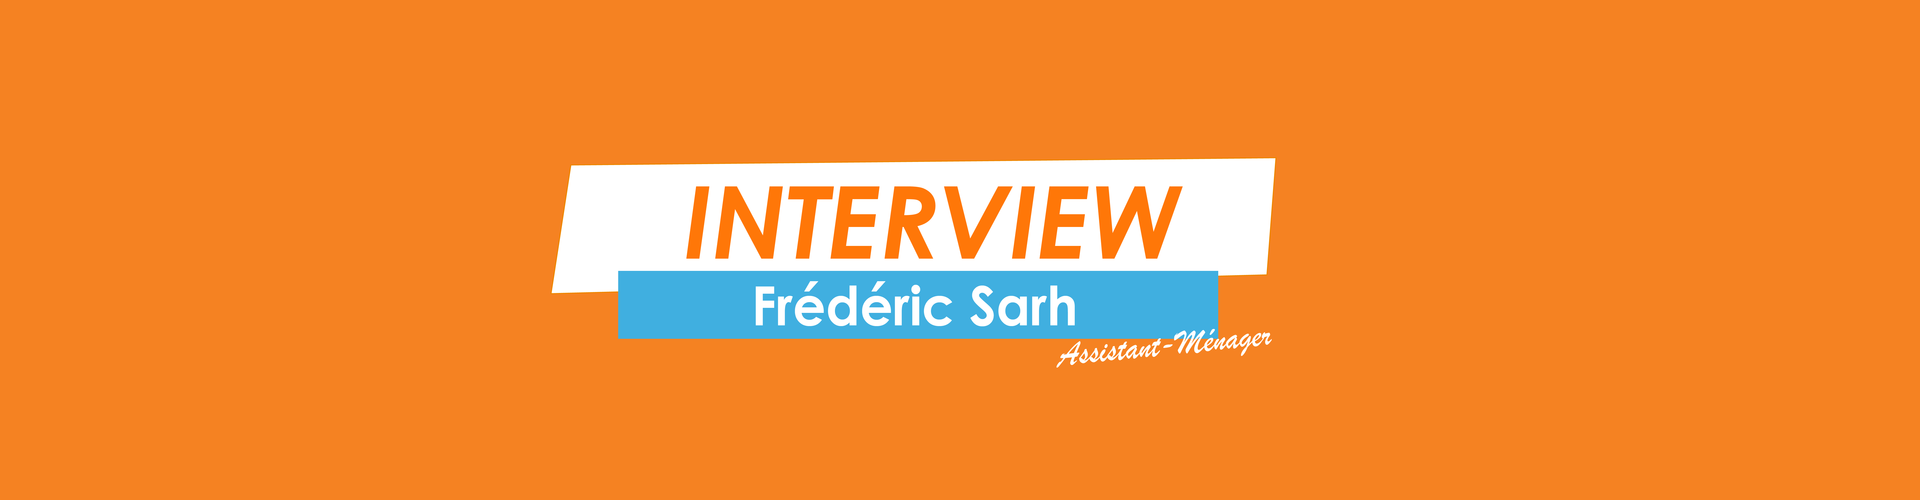 BANNIERE-INTERVIEW-FREDERIC-SARH